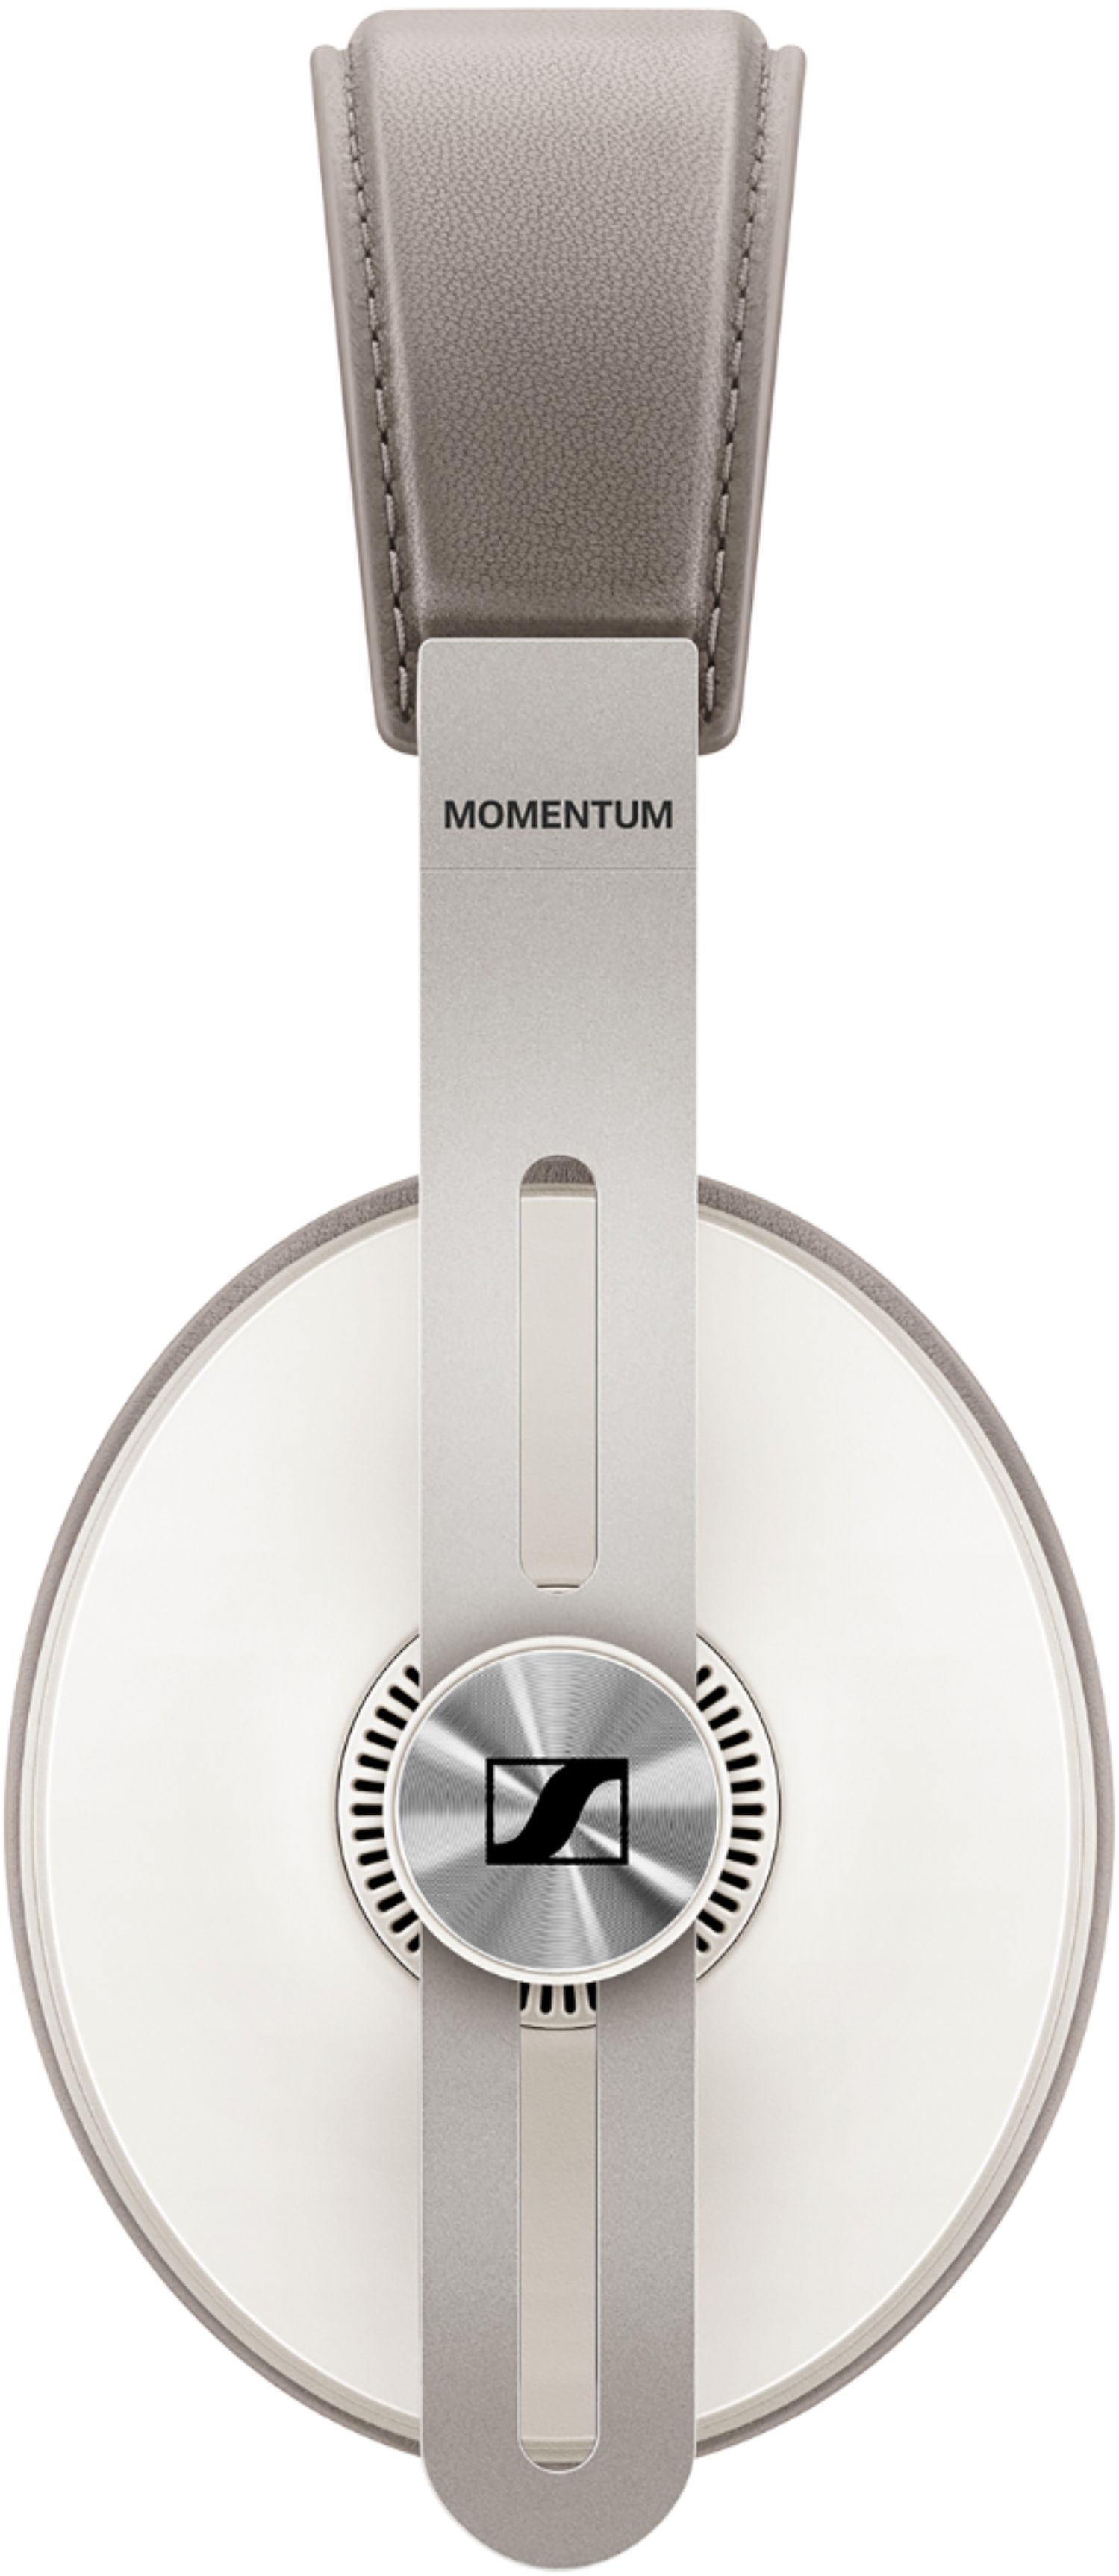 Best Buy: Sennheiser MOMENTUM Wireless Noise Canceling Over-the 